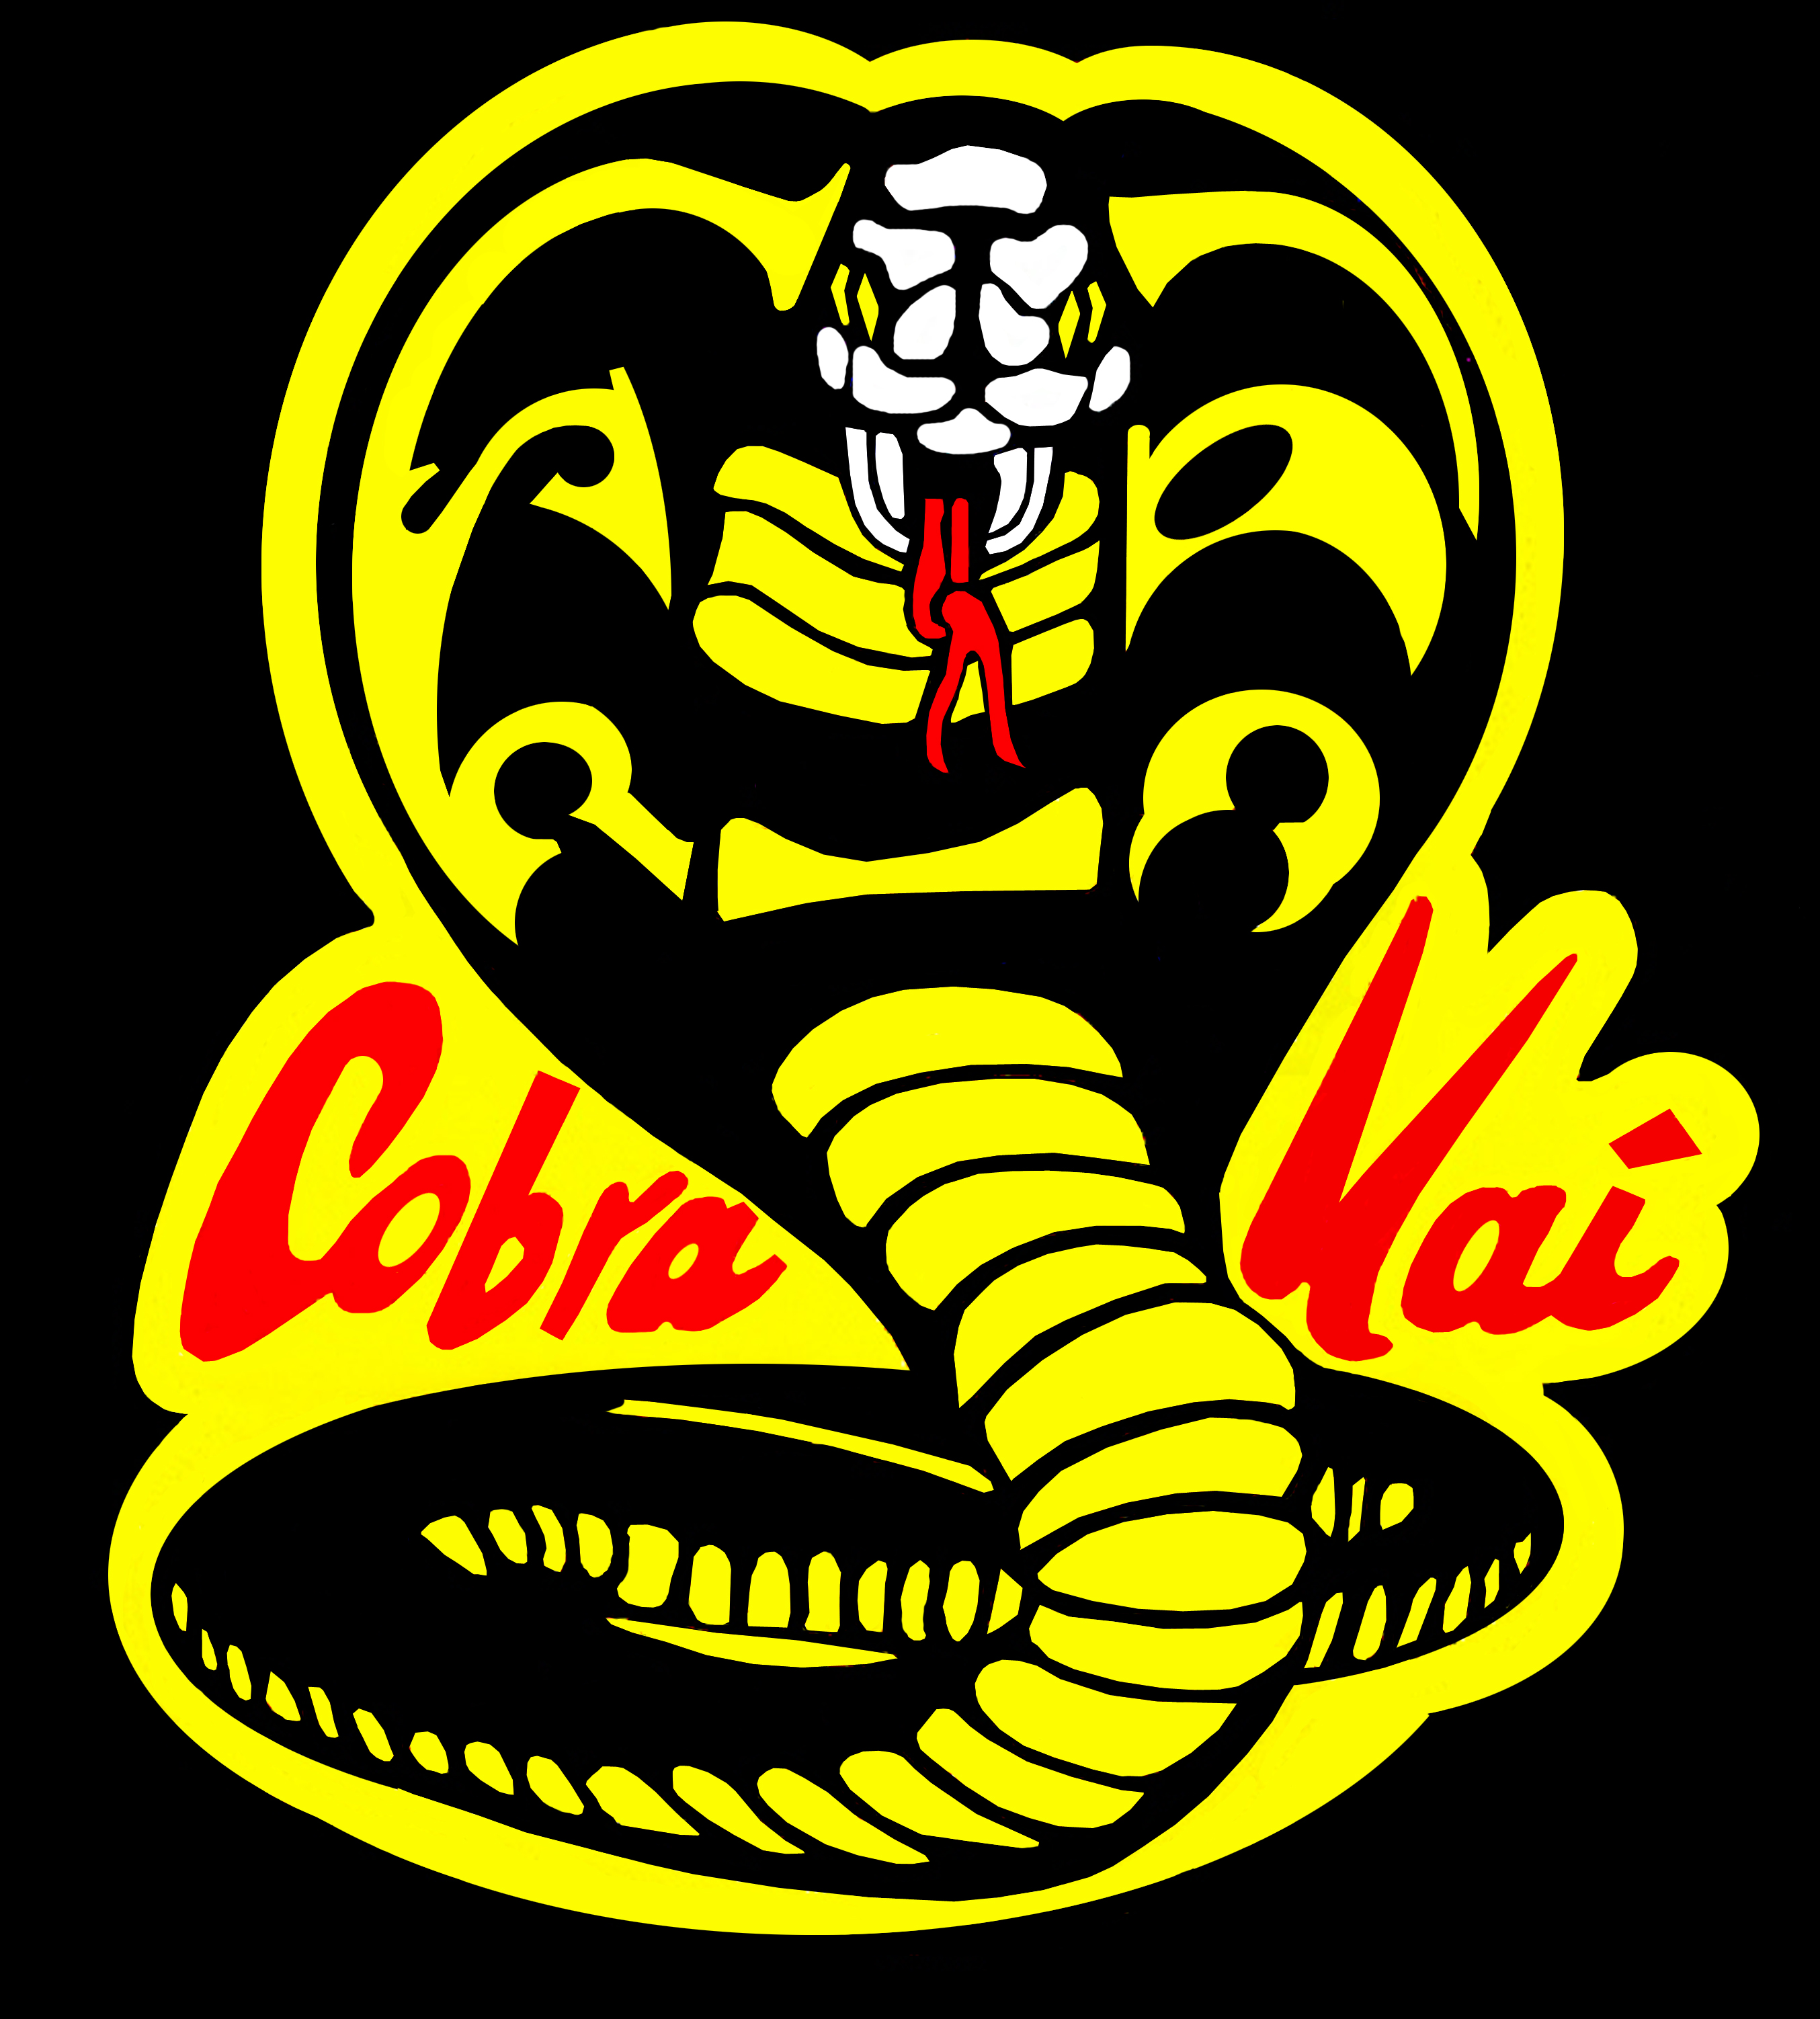 Cobra Kai (season 1) - Wikipedia